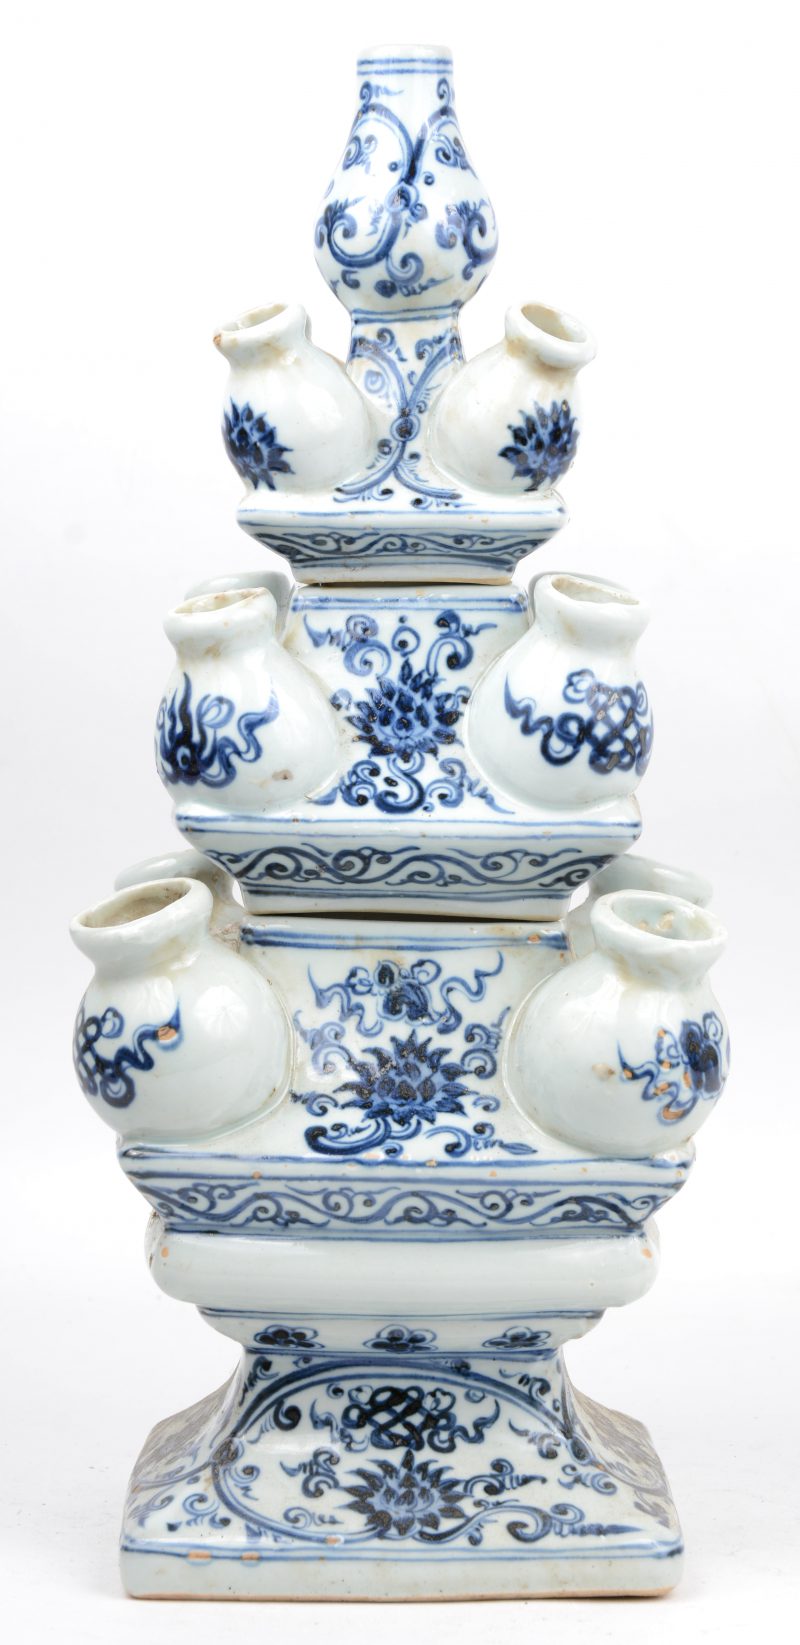 Een uit drie delen opgebouwde tulpenvaas van blauw en wit Chinees porselein naar XVIIe eeuws voorbeeld.